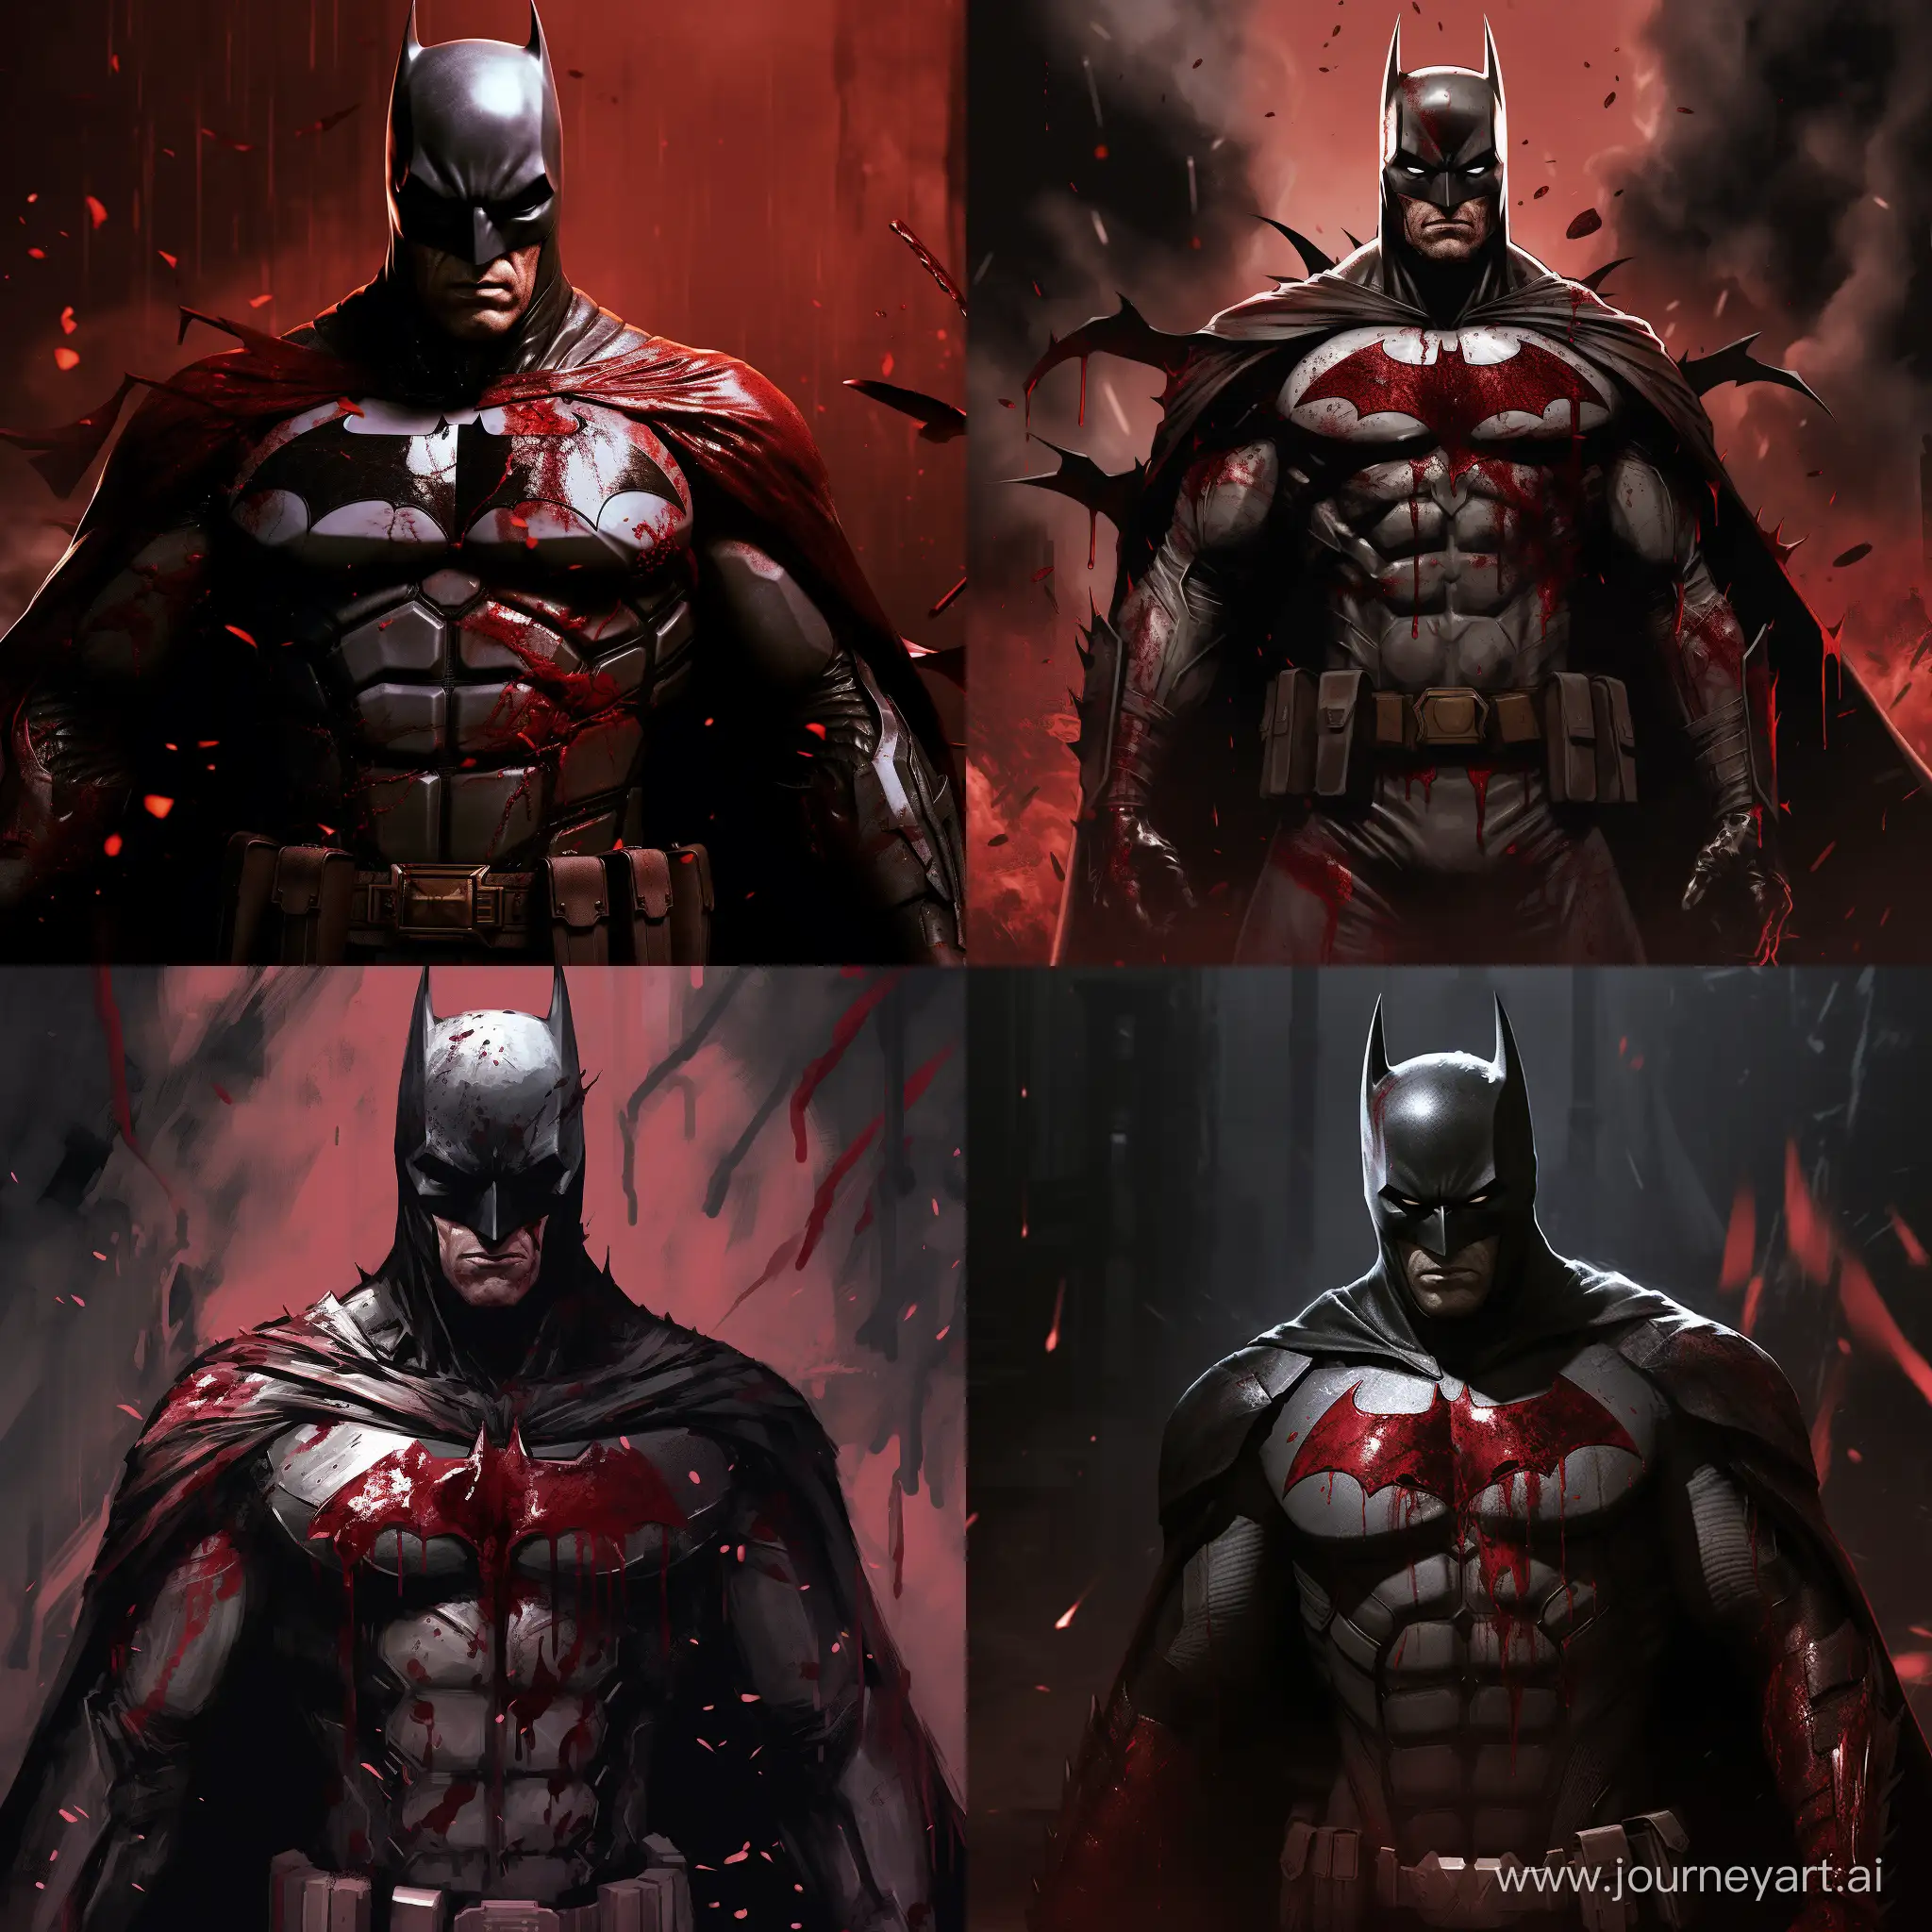 Batman con el traje roto y lleno de sangre tras una pelea